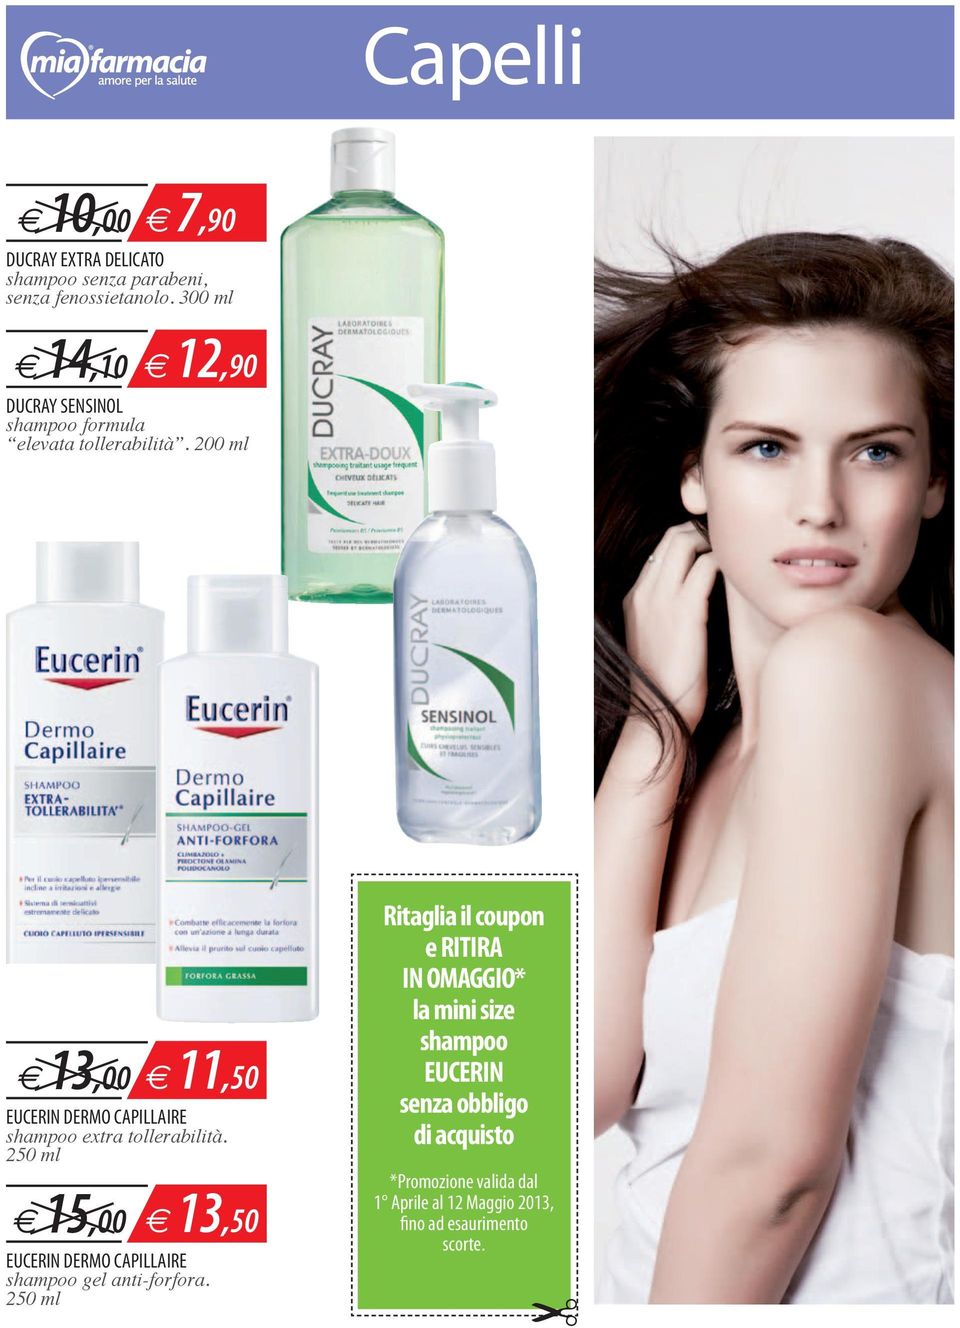 200 ml e 13,00 e 11,50 EUCERIN DERMO CAPILLAIRE shampoo extra tollerabilità.